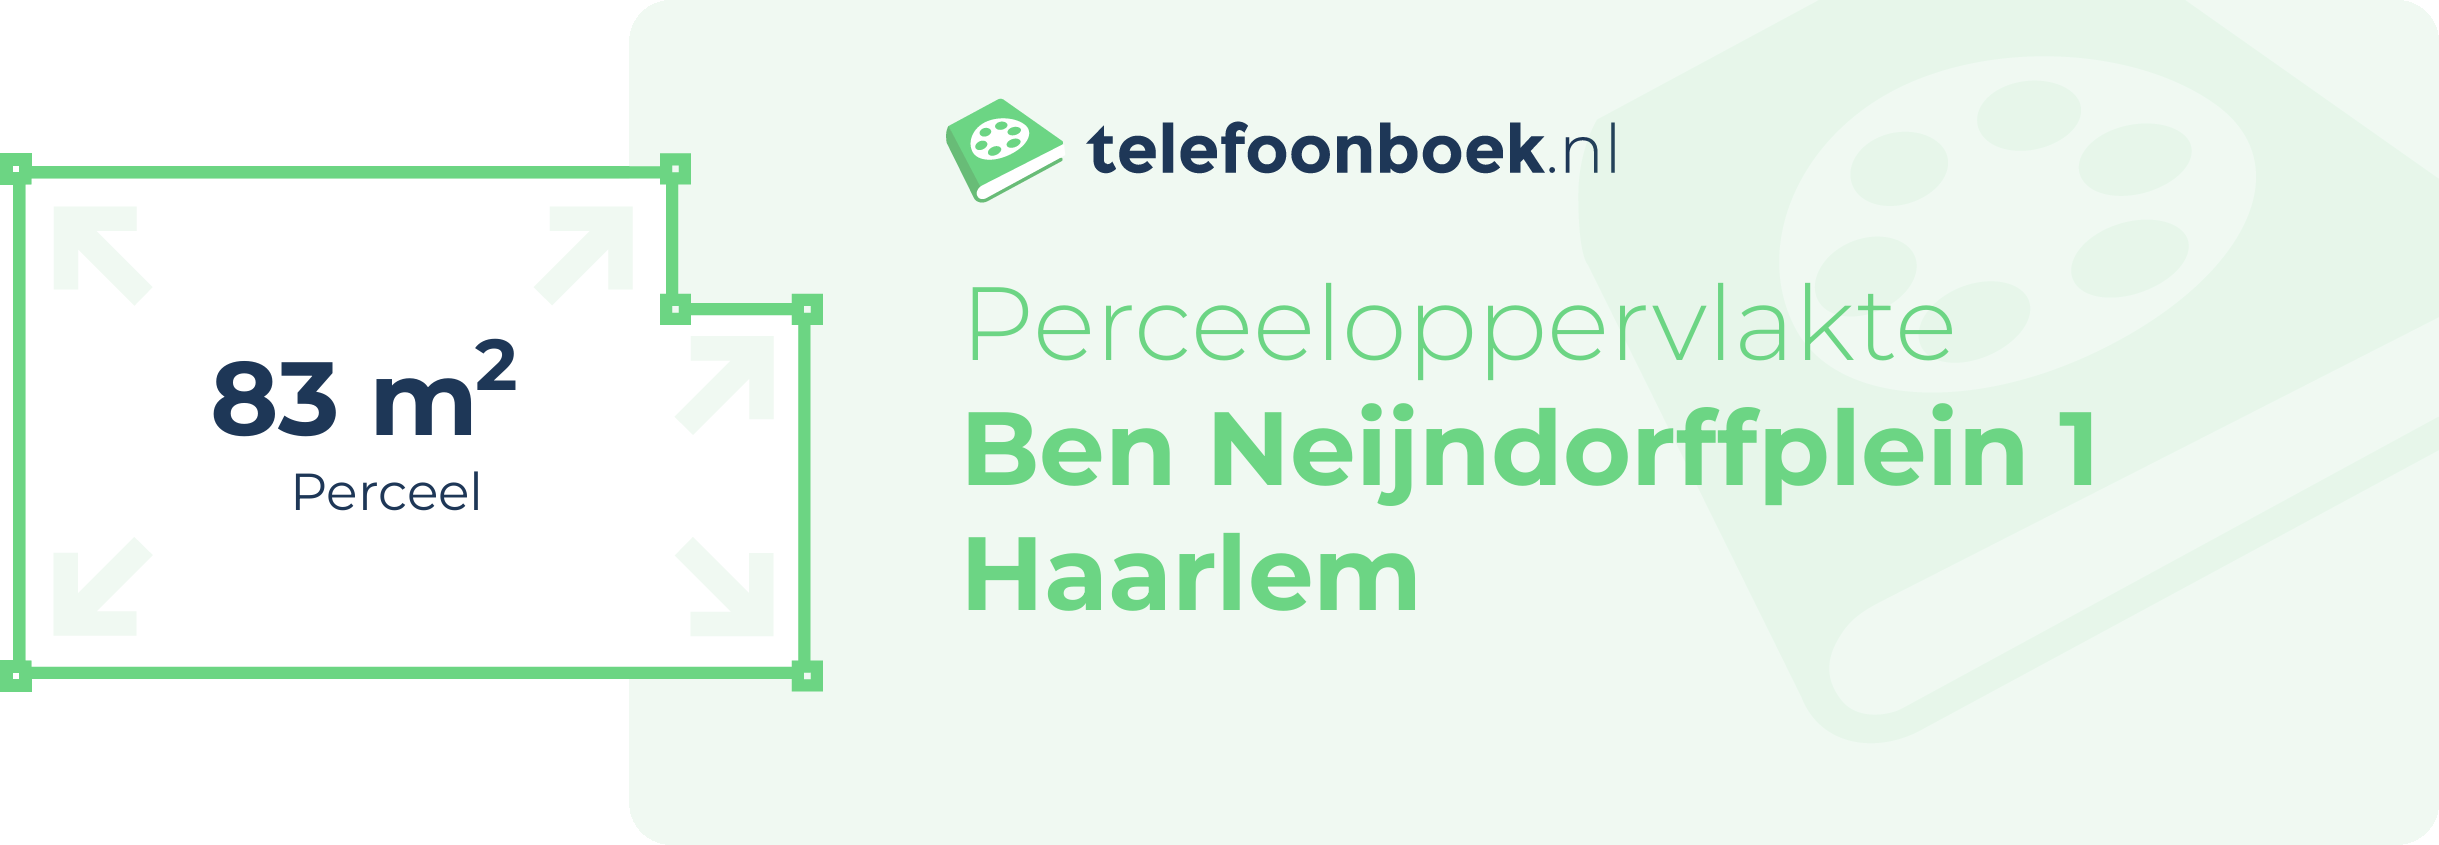 Perceeloppervlakte Ben Neijndorffplein 1 Haarlem